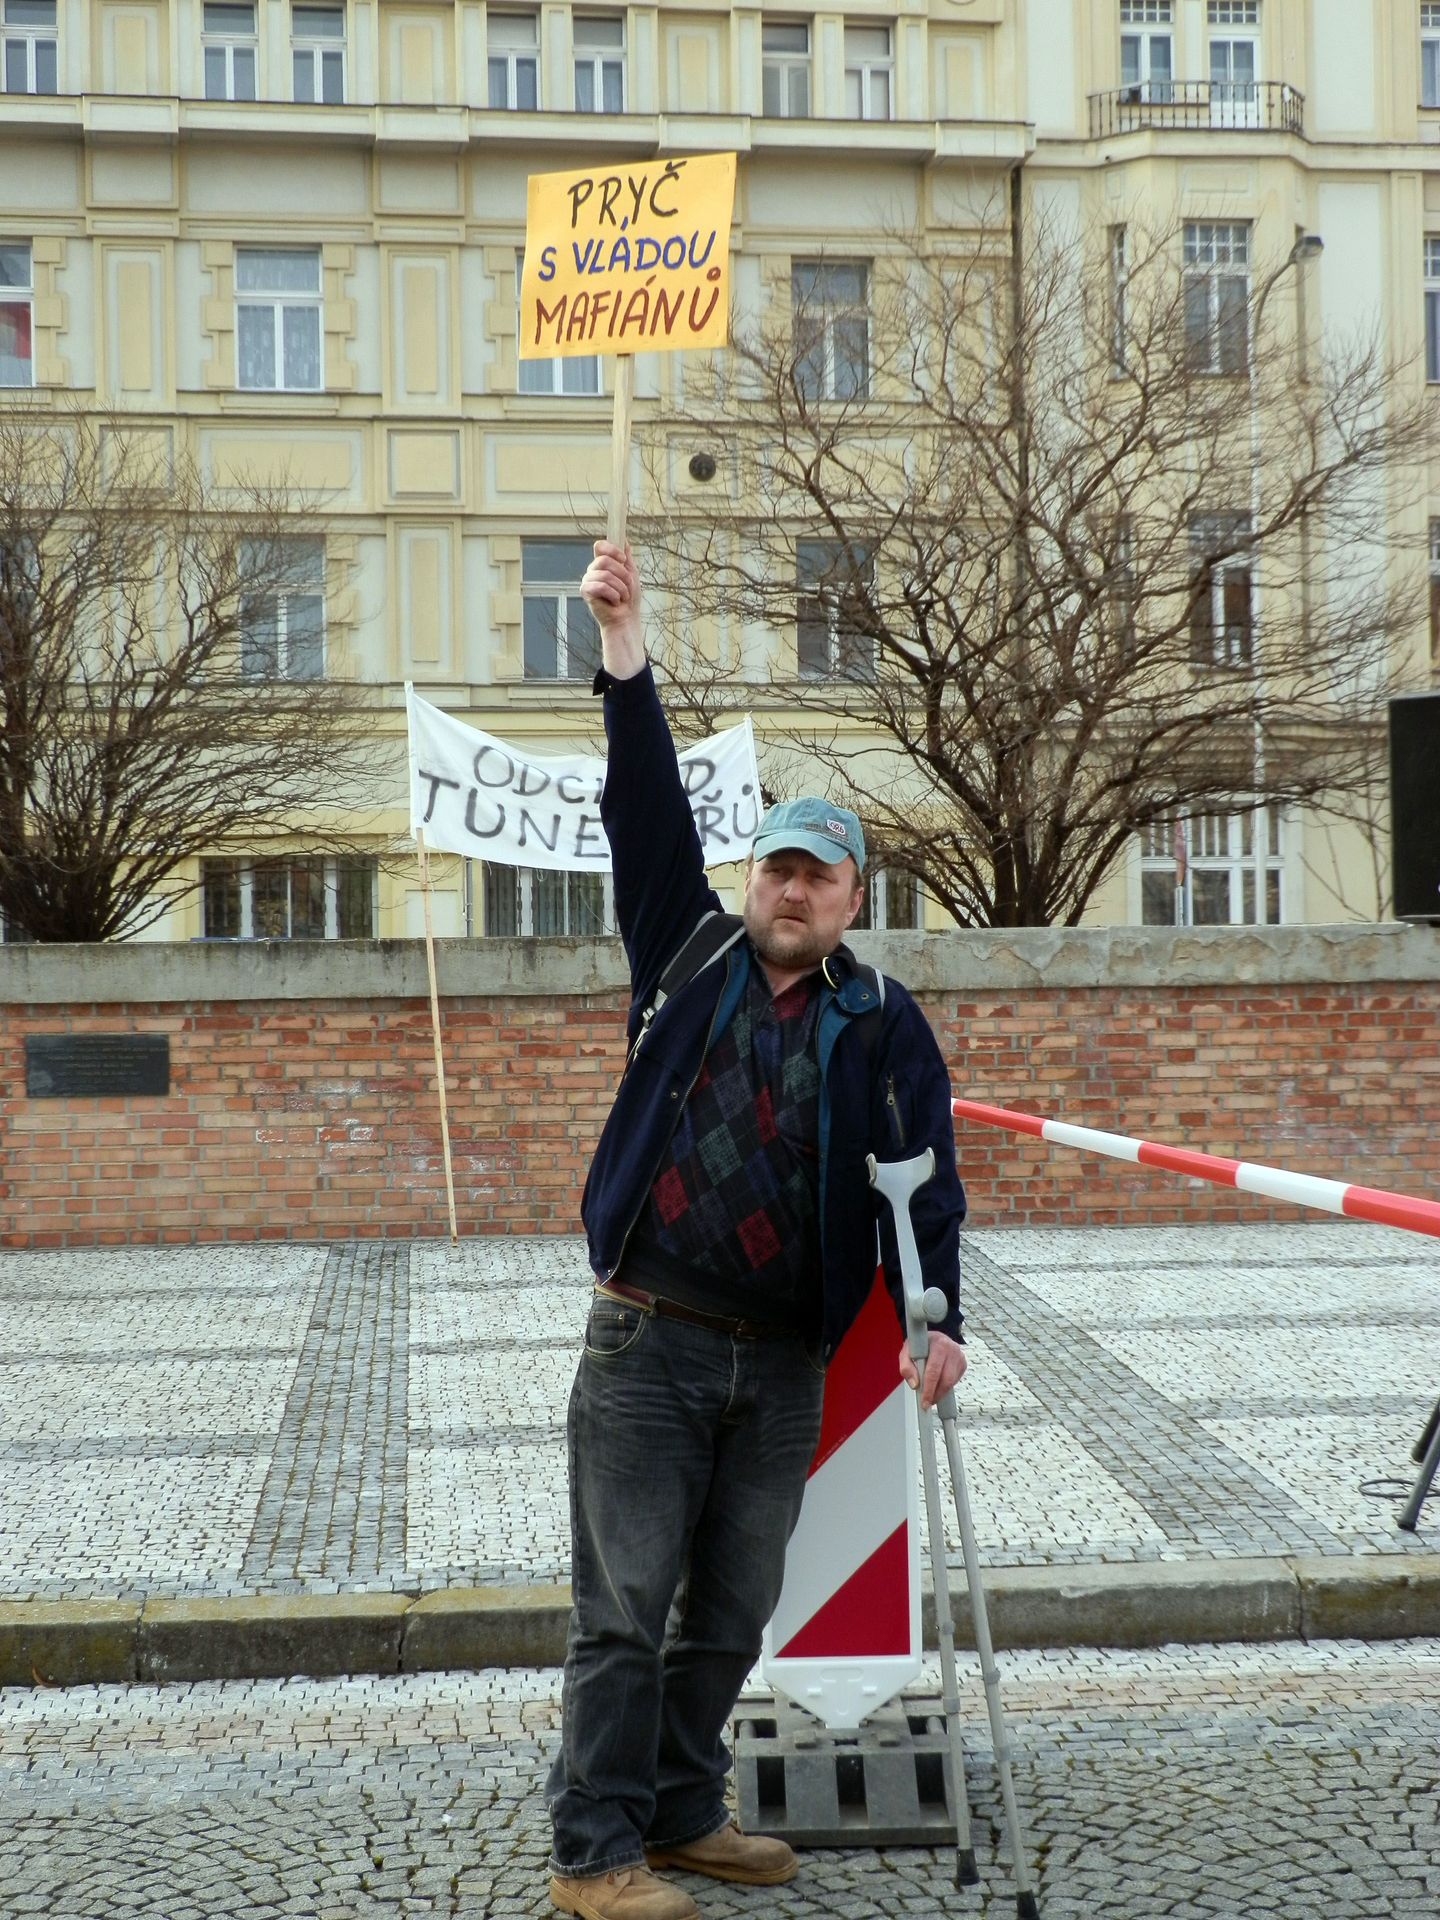 Lidé demonstrují proti vládě ČR a prezidentovi - 15 - Lidé protestují proti vládě Petra Nečase a prezidentu Klausovi (15/15)